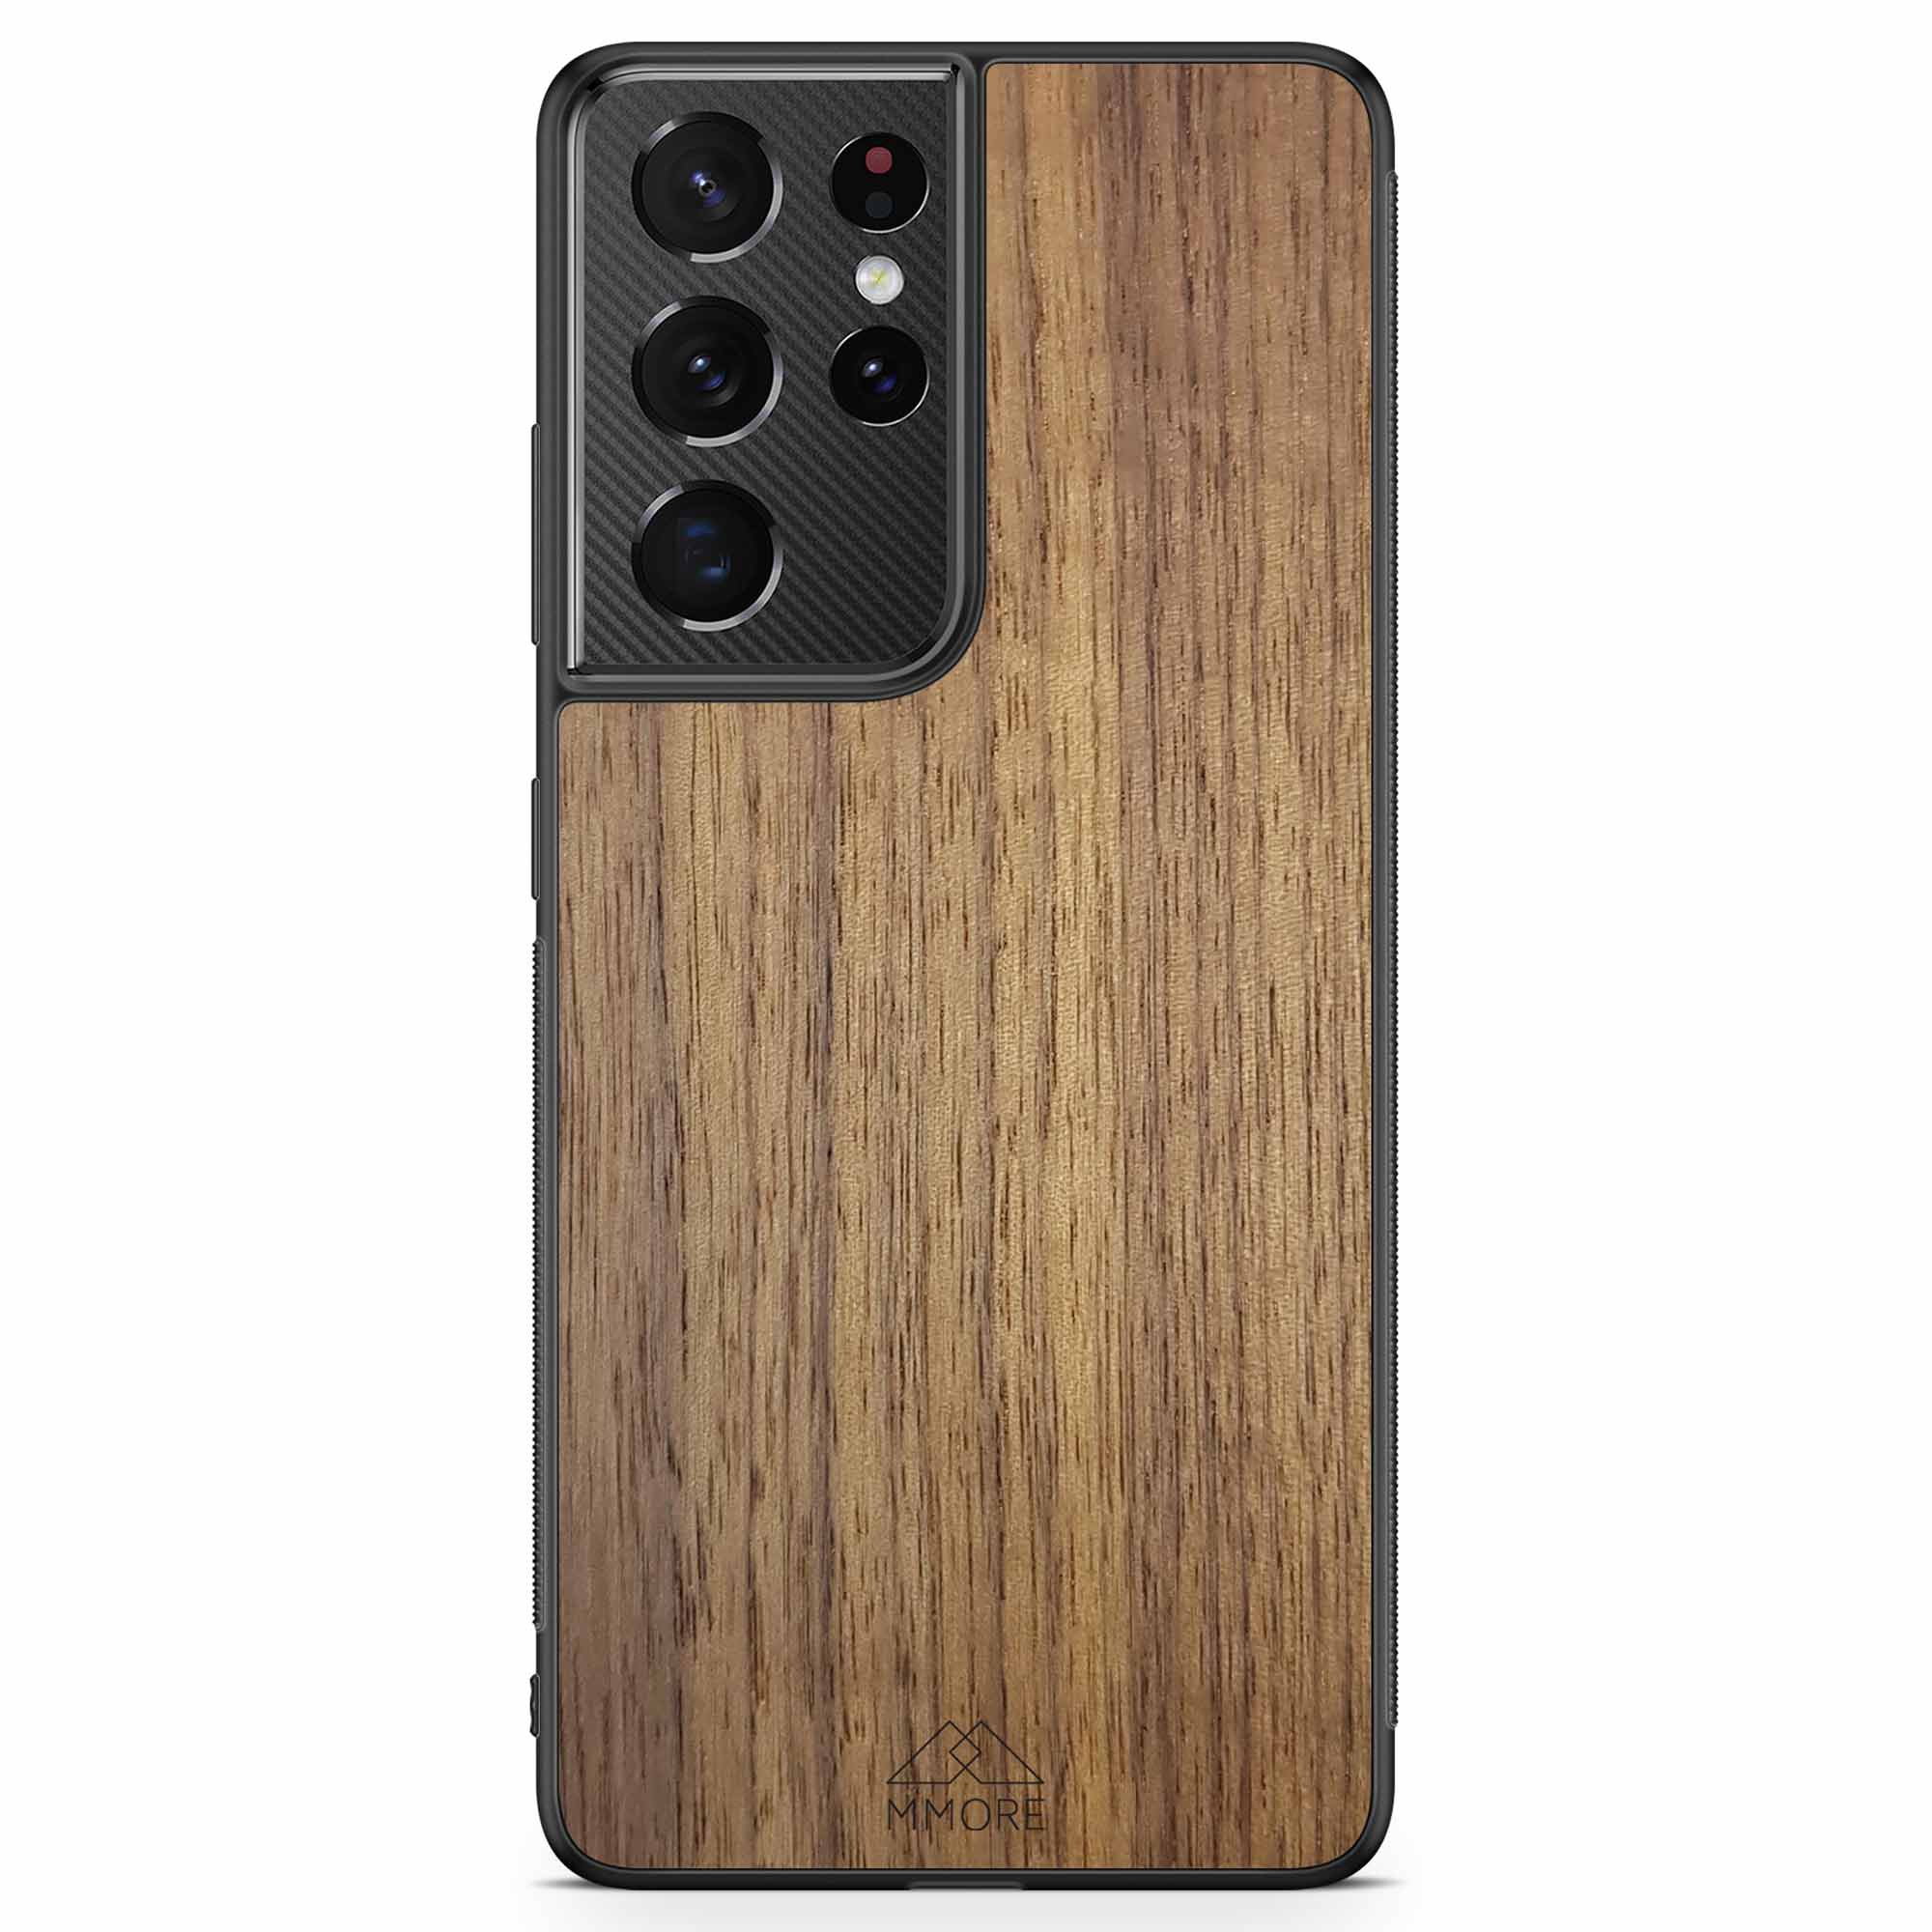 Чехол для телефона Samsung S21 Ultra Wood из американского ореха